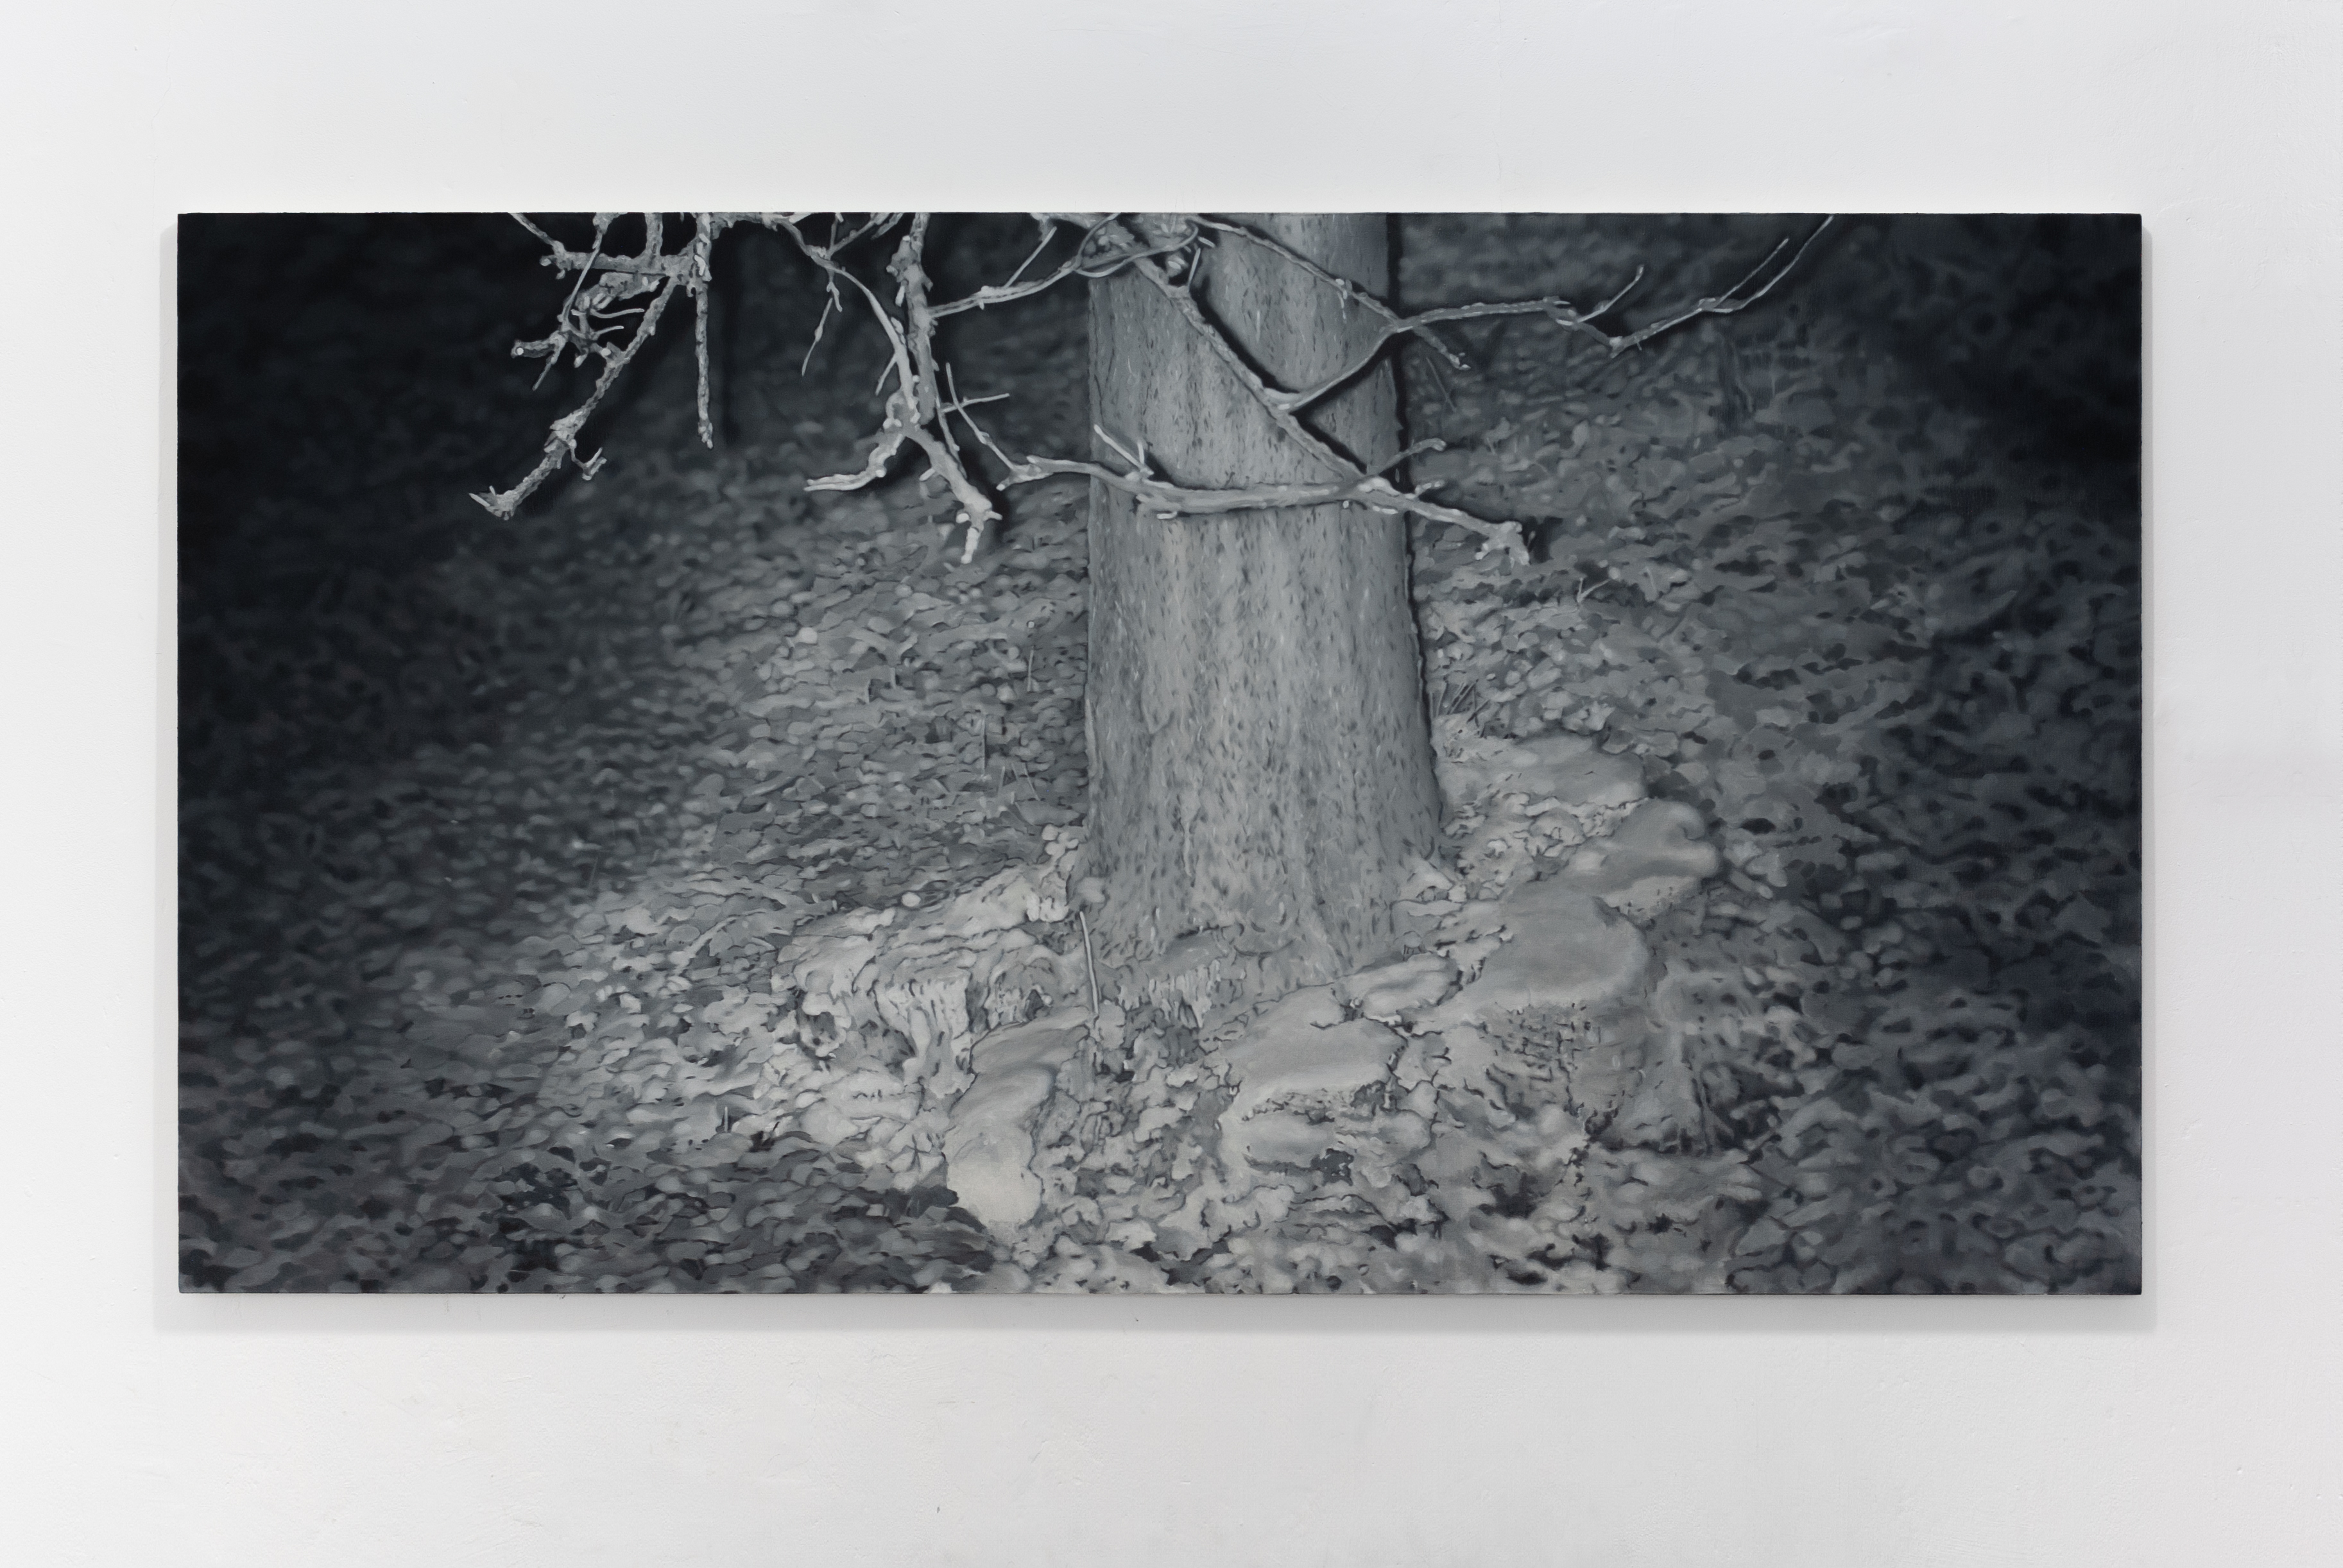 Pawlak M, Drzewo w drzewie, 110x200 cm, olej na płótnie, 2021